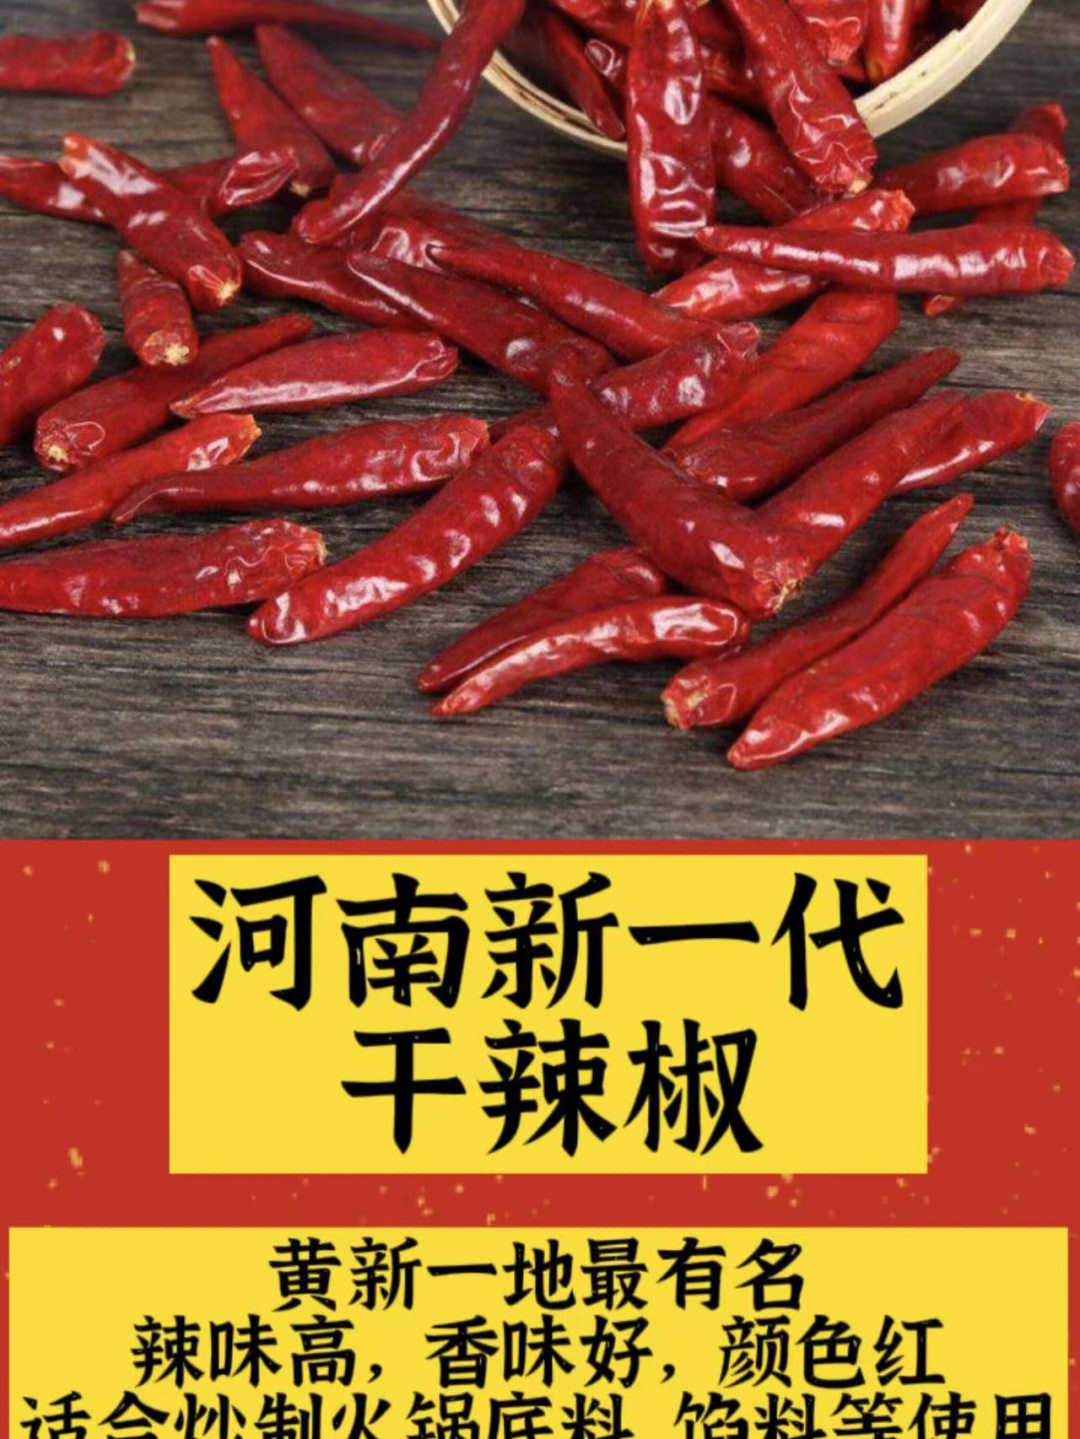 辣椒的品种名称及图片图片